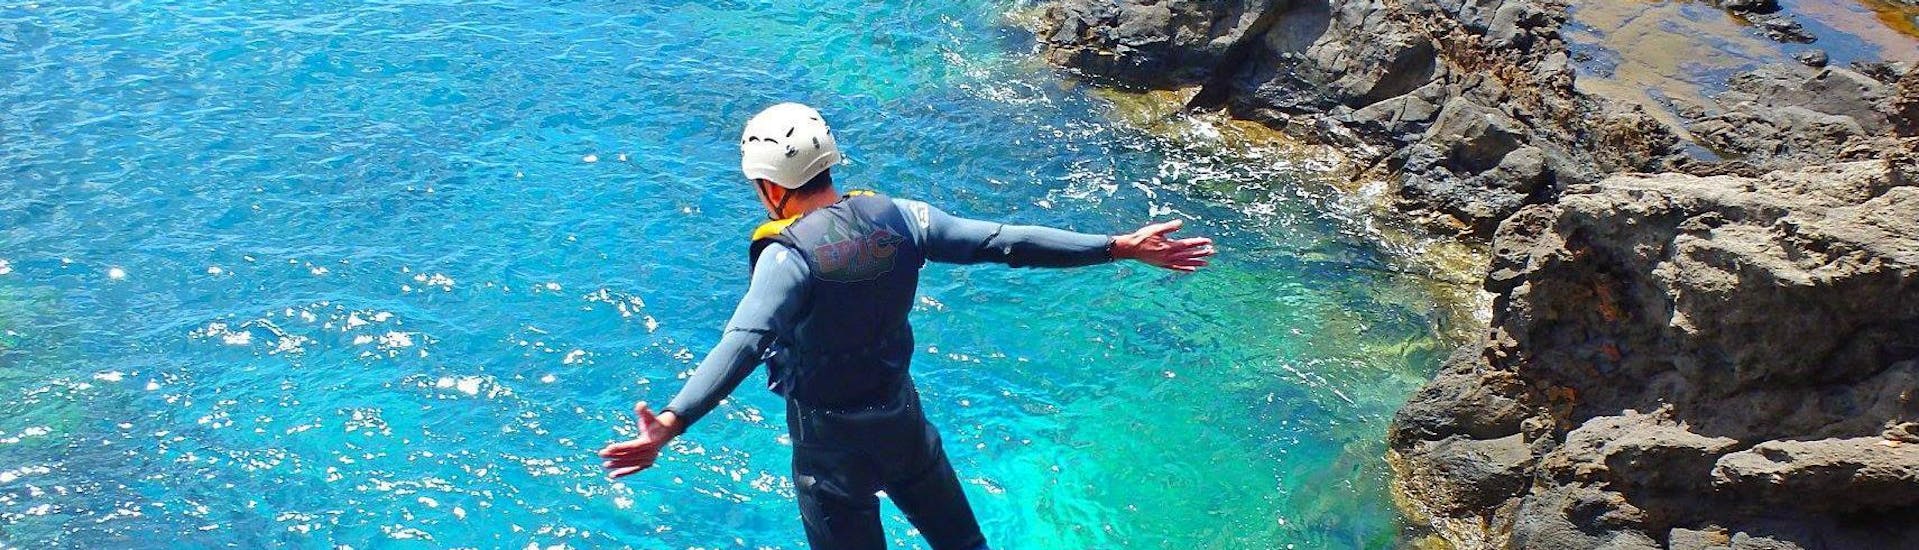 Een deelnemer aan de Coasteering bij Ponta de São Lourenço met Epic Madeira springt in het turquoise water van de oceaan.